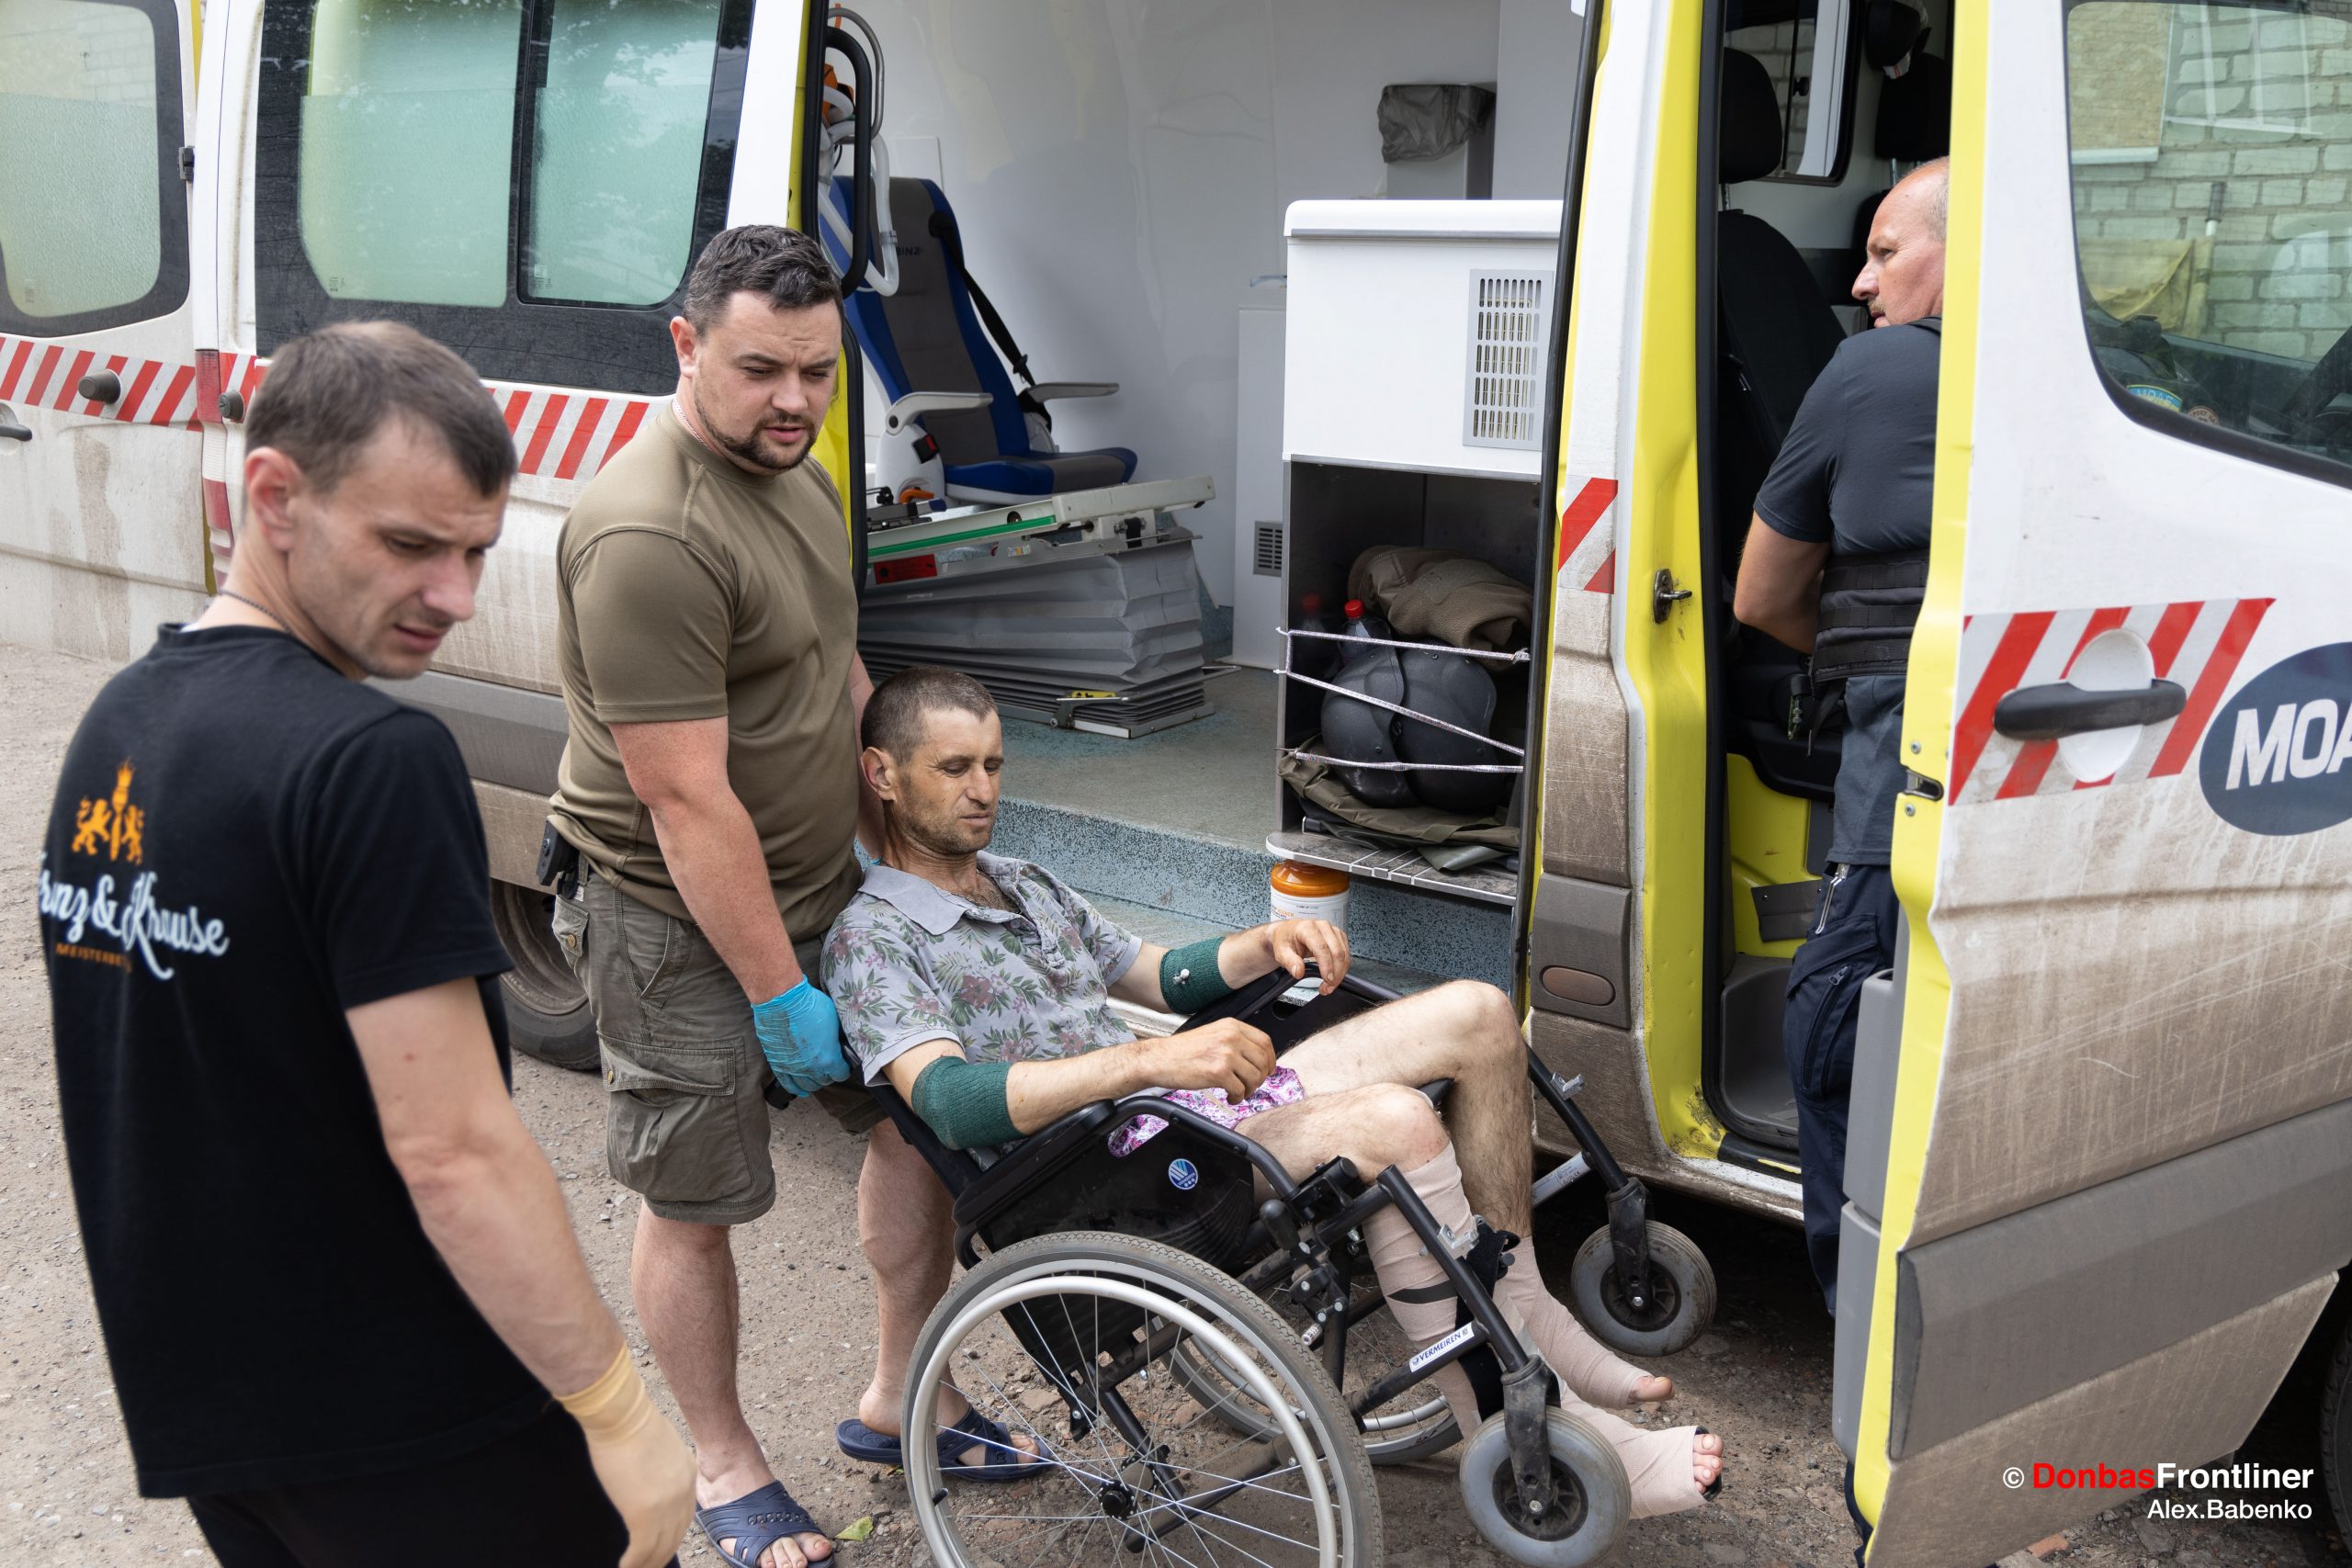 Donbas Frontliner / Лікар Володимир готує до посадки в машину медичної евакуації пораненого Андрія